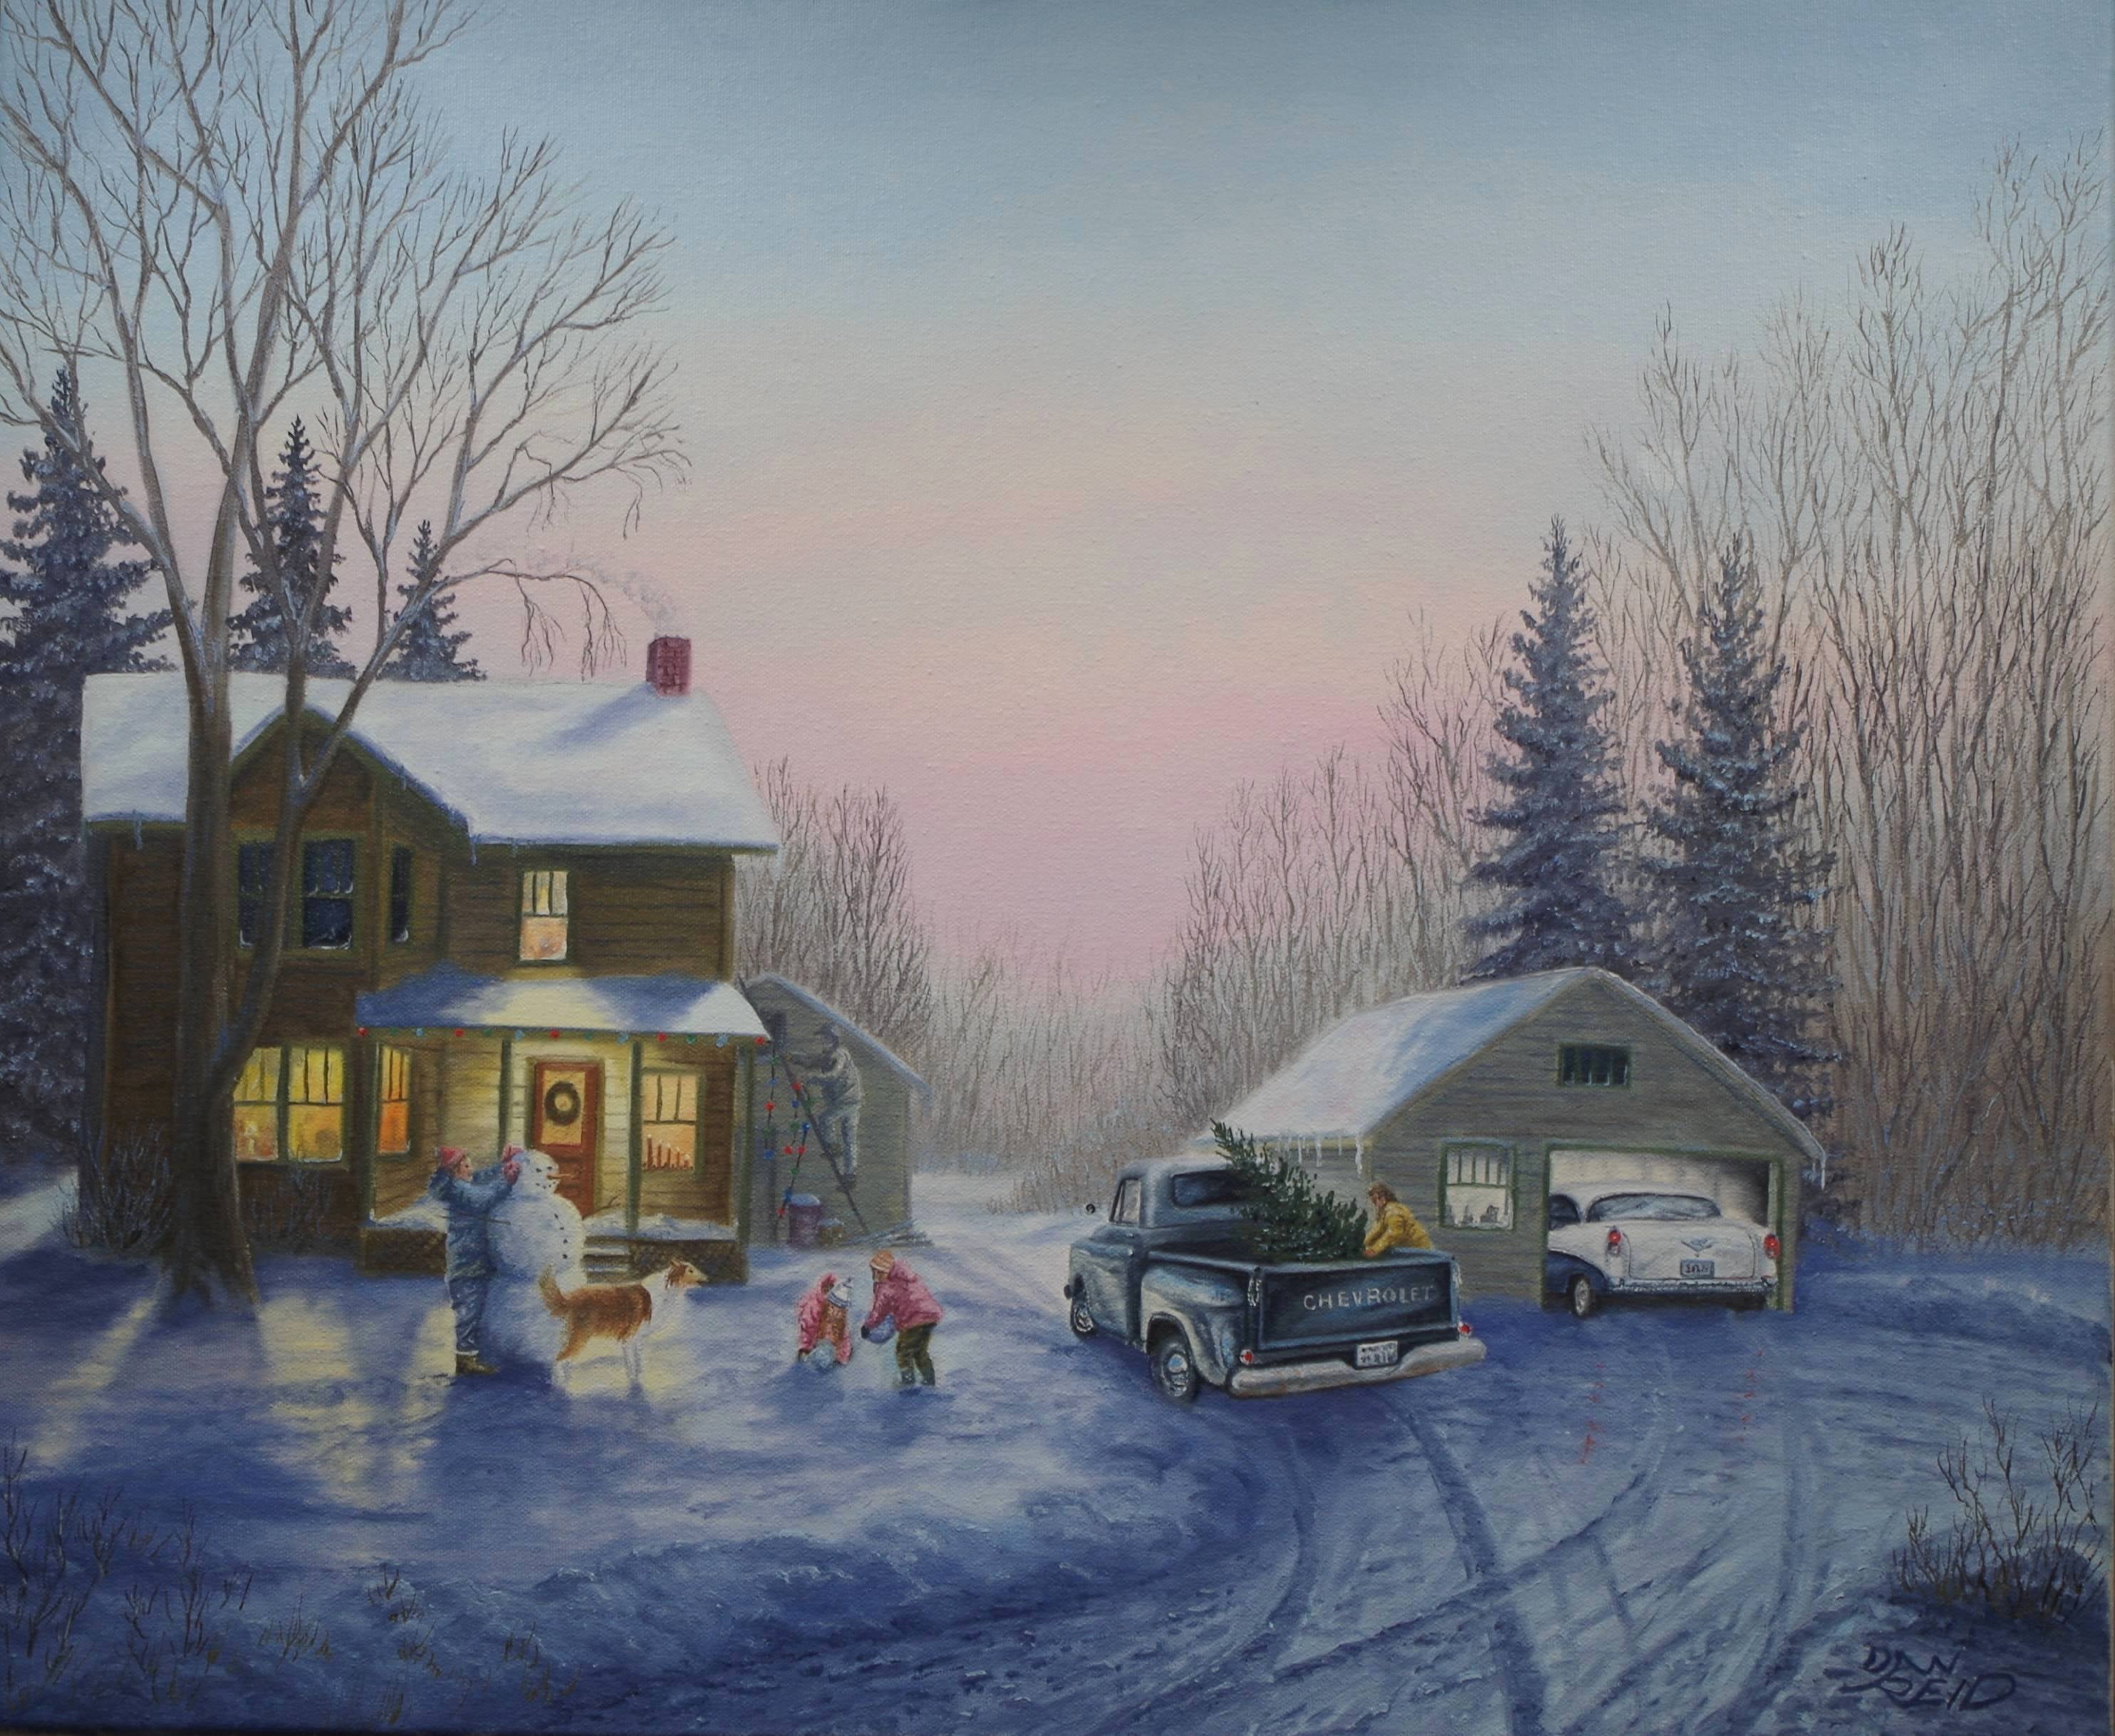 "Christmas Eve" by Dan Reid